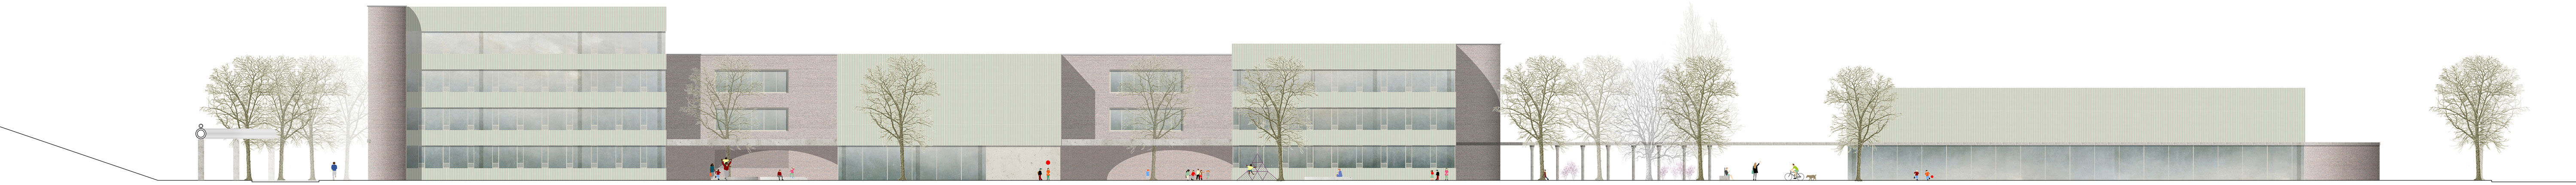 Baur & Latsch Architekten | Wettbewerb | Schulcampus Greifswalder Straße | Erfurt Realisierungswettbewerb 2021